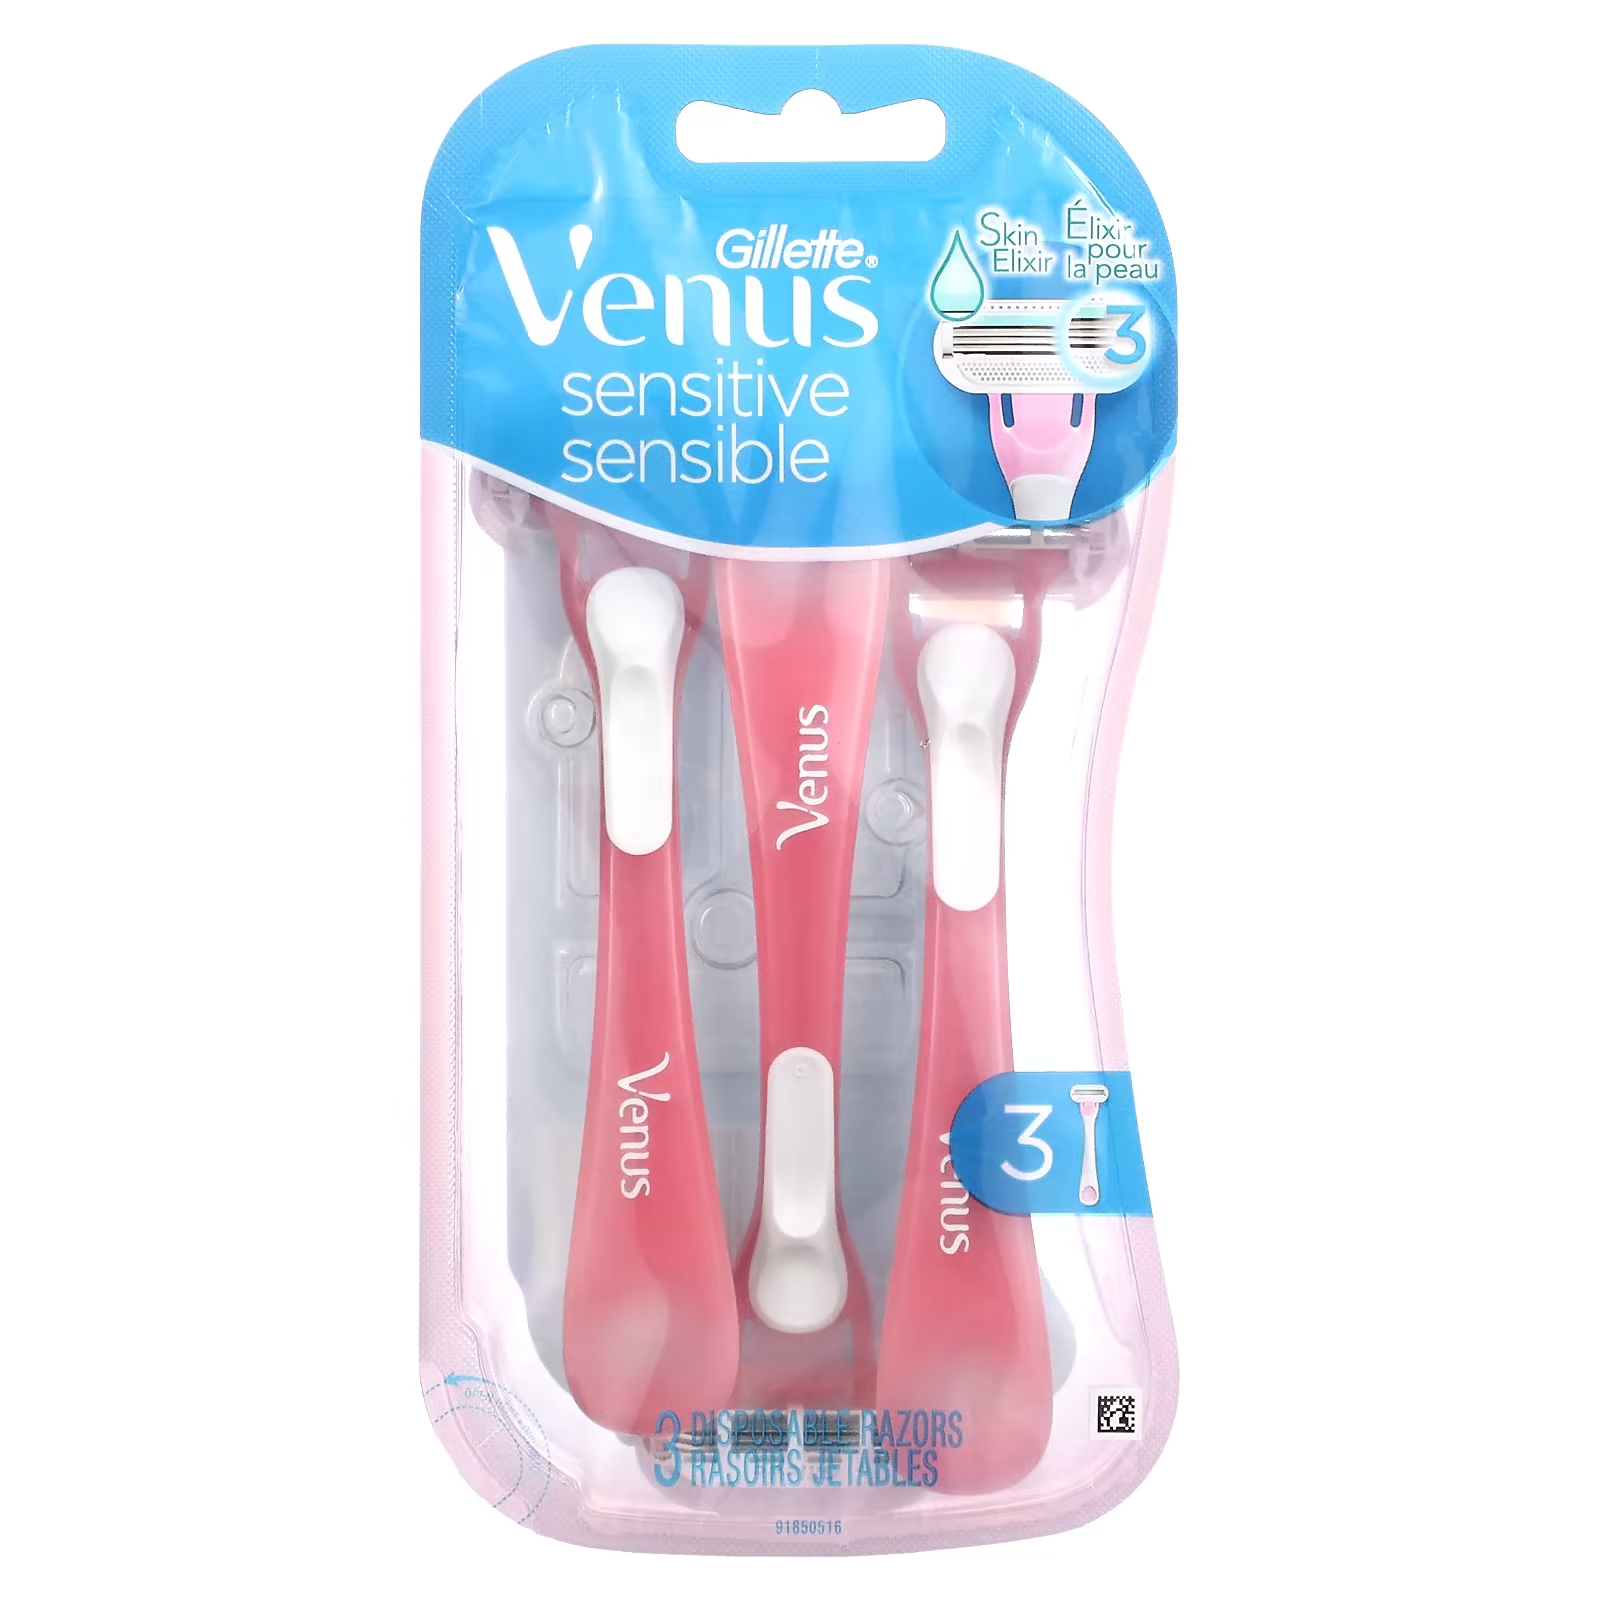 Одноразовые бритвы Gillette Venus Sensitive 3 gillette venus 3 одноразовые станки для женщин 3 шт